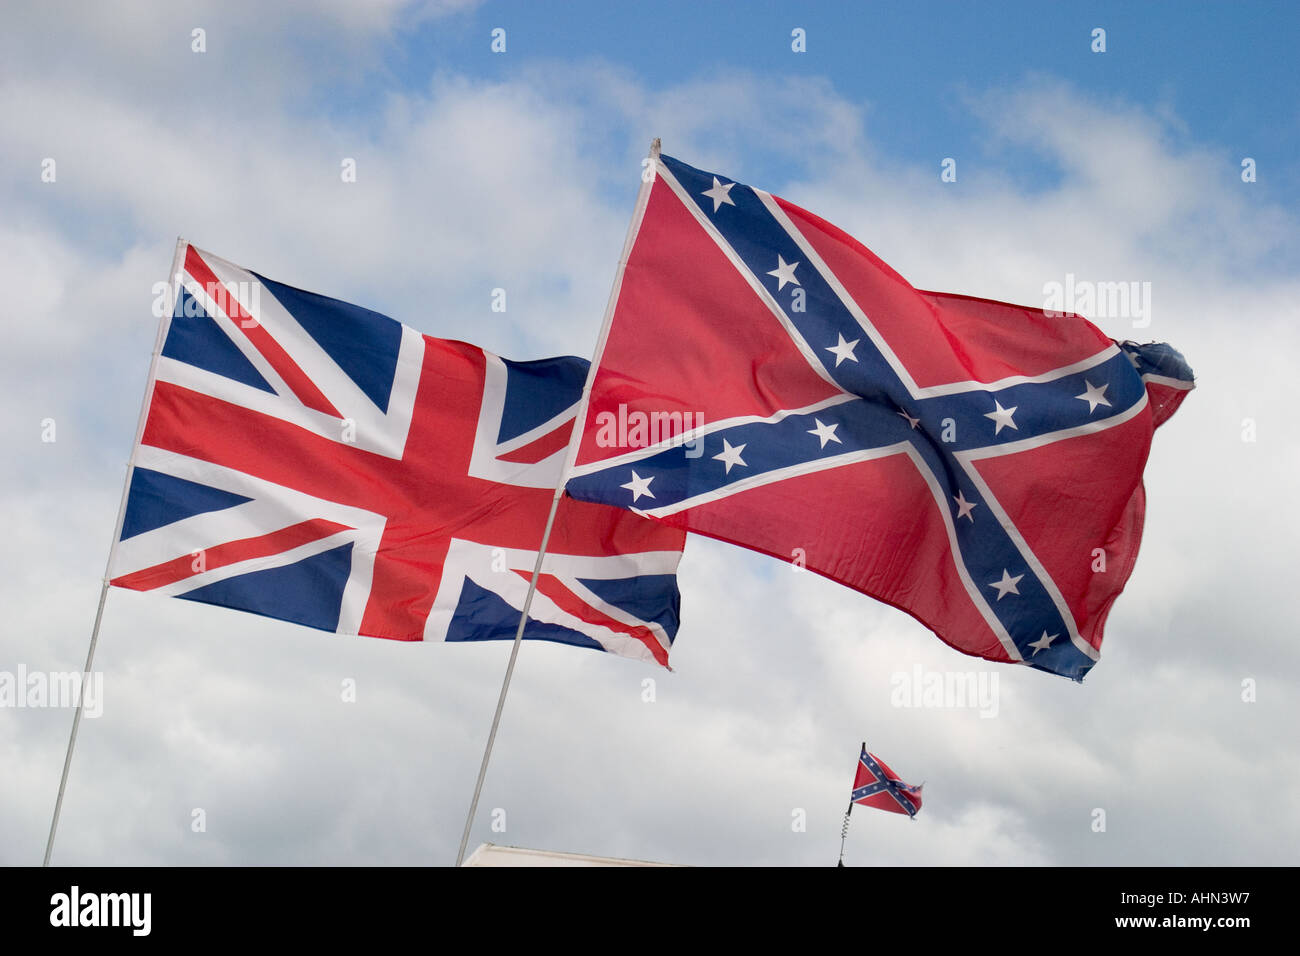 Unione britannica e bandiera americana bandiera Confederate volare insieme Foto Stock